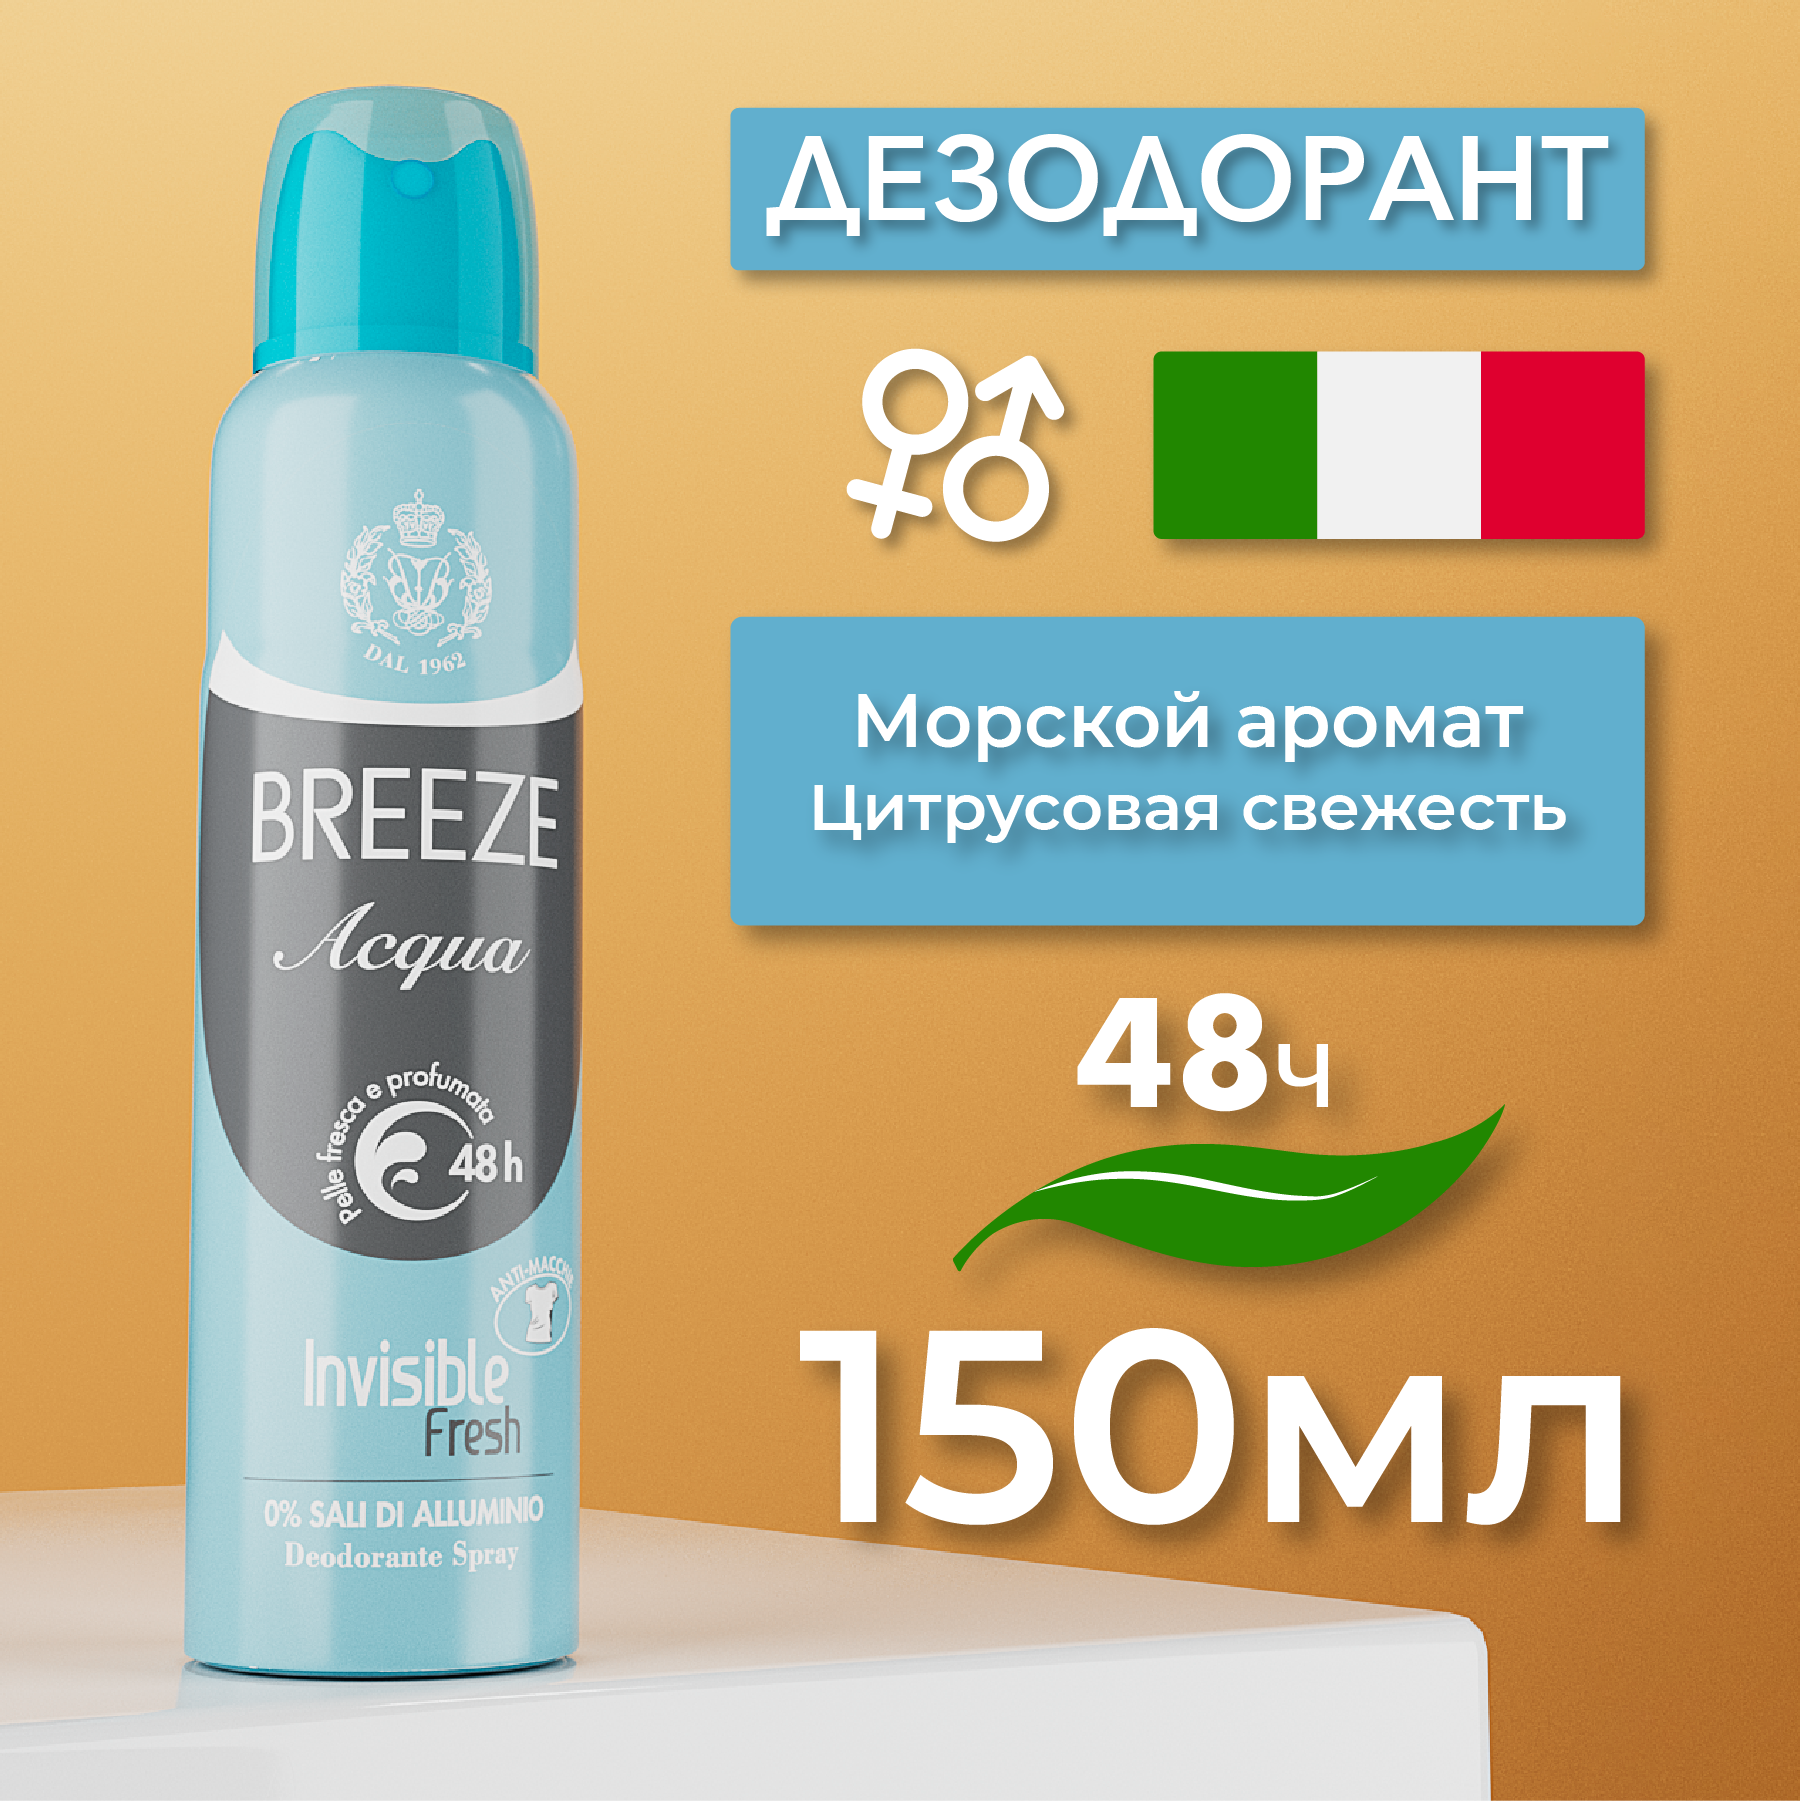 Breeze Дезодорант антиперспирант для тела в аэрозольной упаковке Acqua, 150 мл.